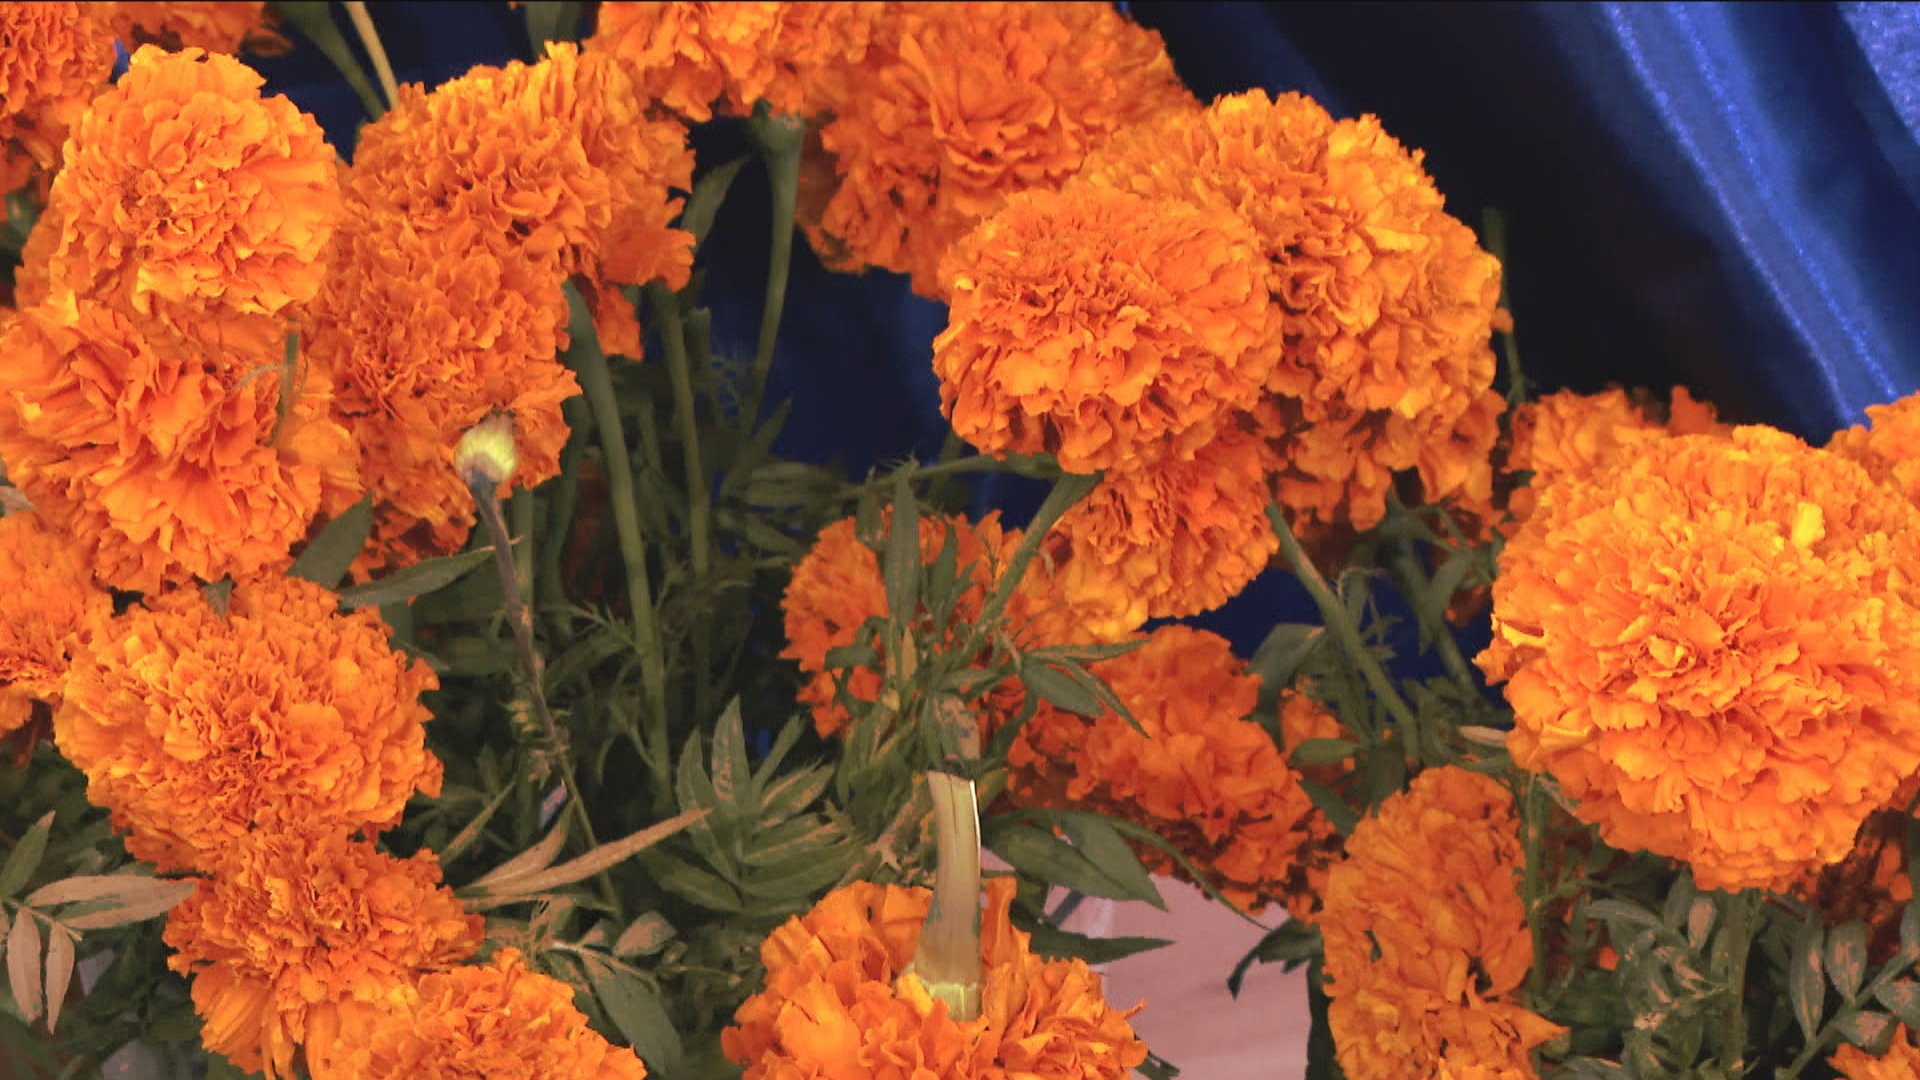 Cempasuchil/ Marigold plant Flower Delivery Chicago IL - Franco's Flower  Shop